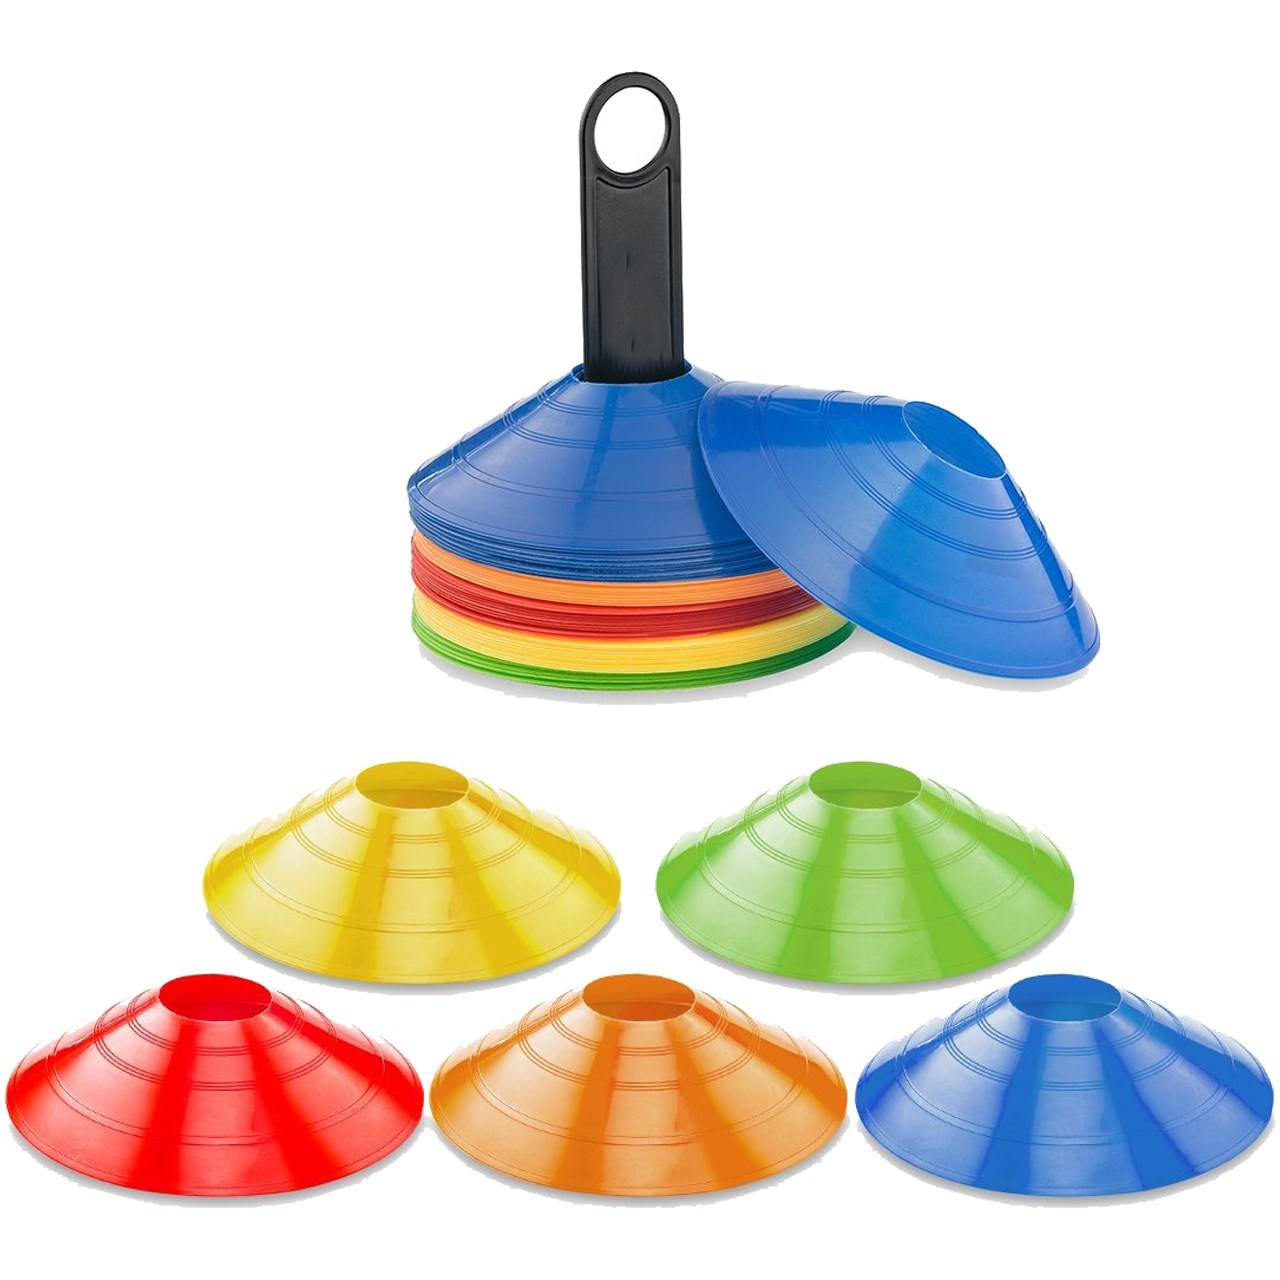 مانع تمرین مدل Training Cones 2019 در 4 رنگ مجموعه 12 عددی به همراه پایه نگهدارنده